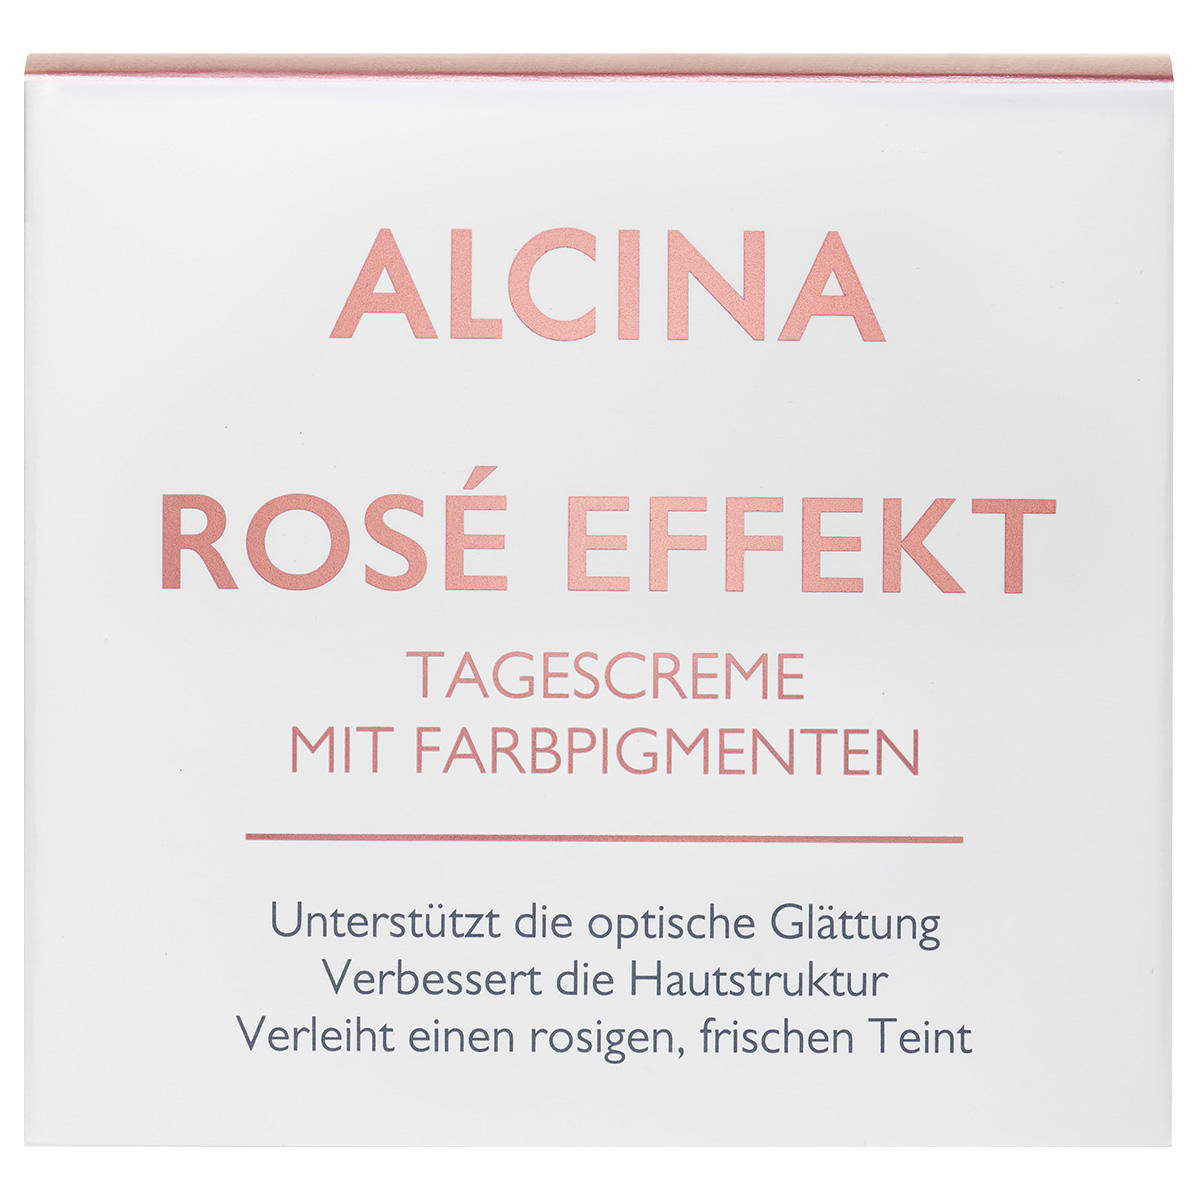 Alcina Rosé Effekt Crema de día 50 ml - 3